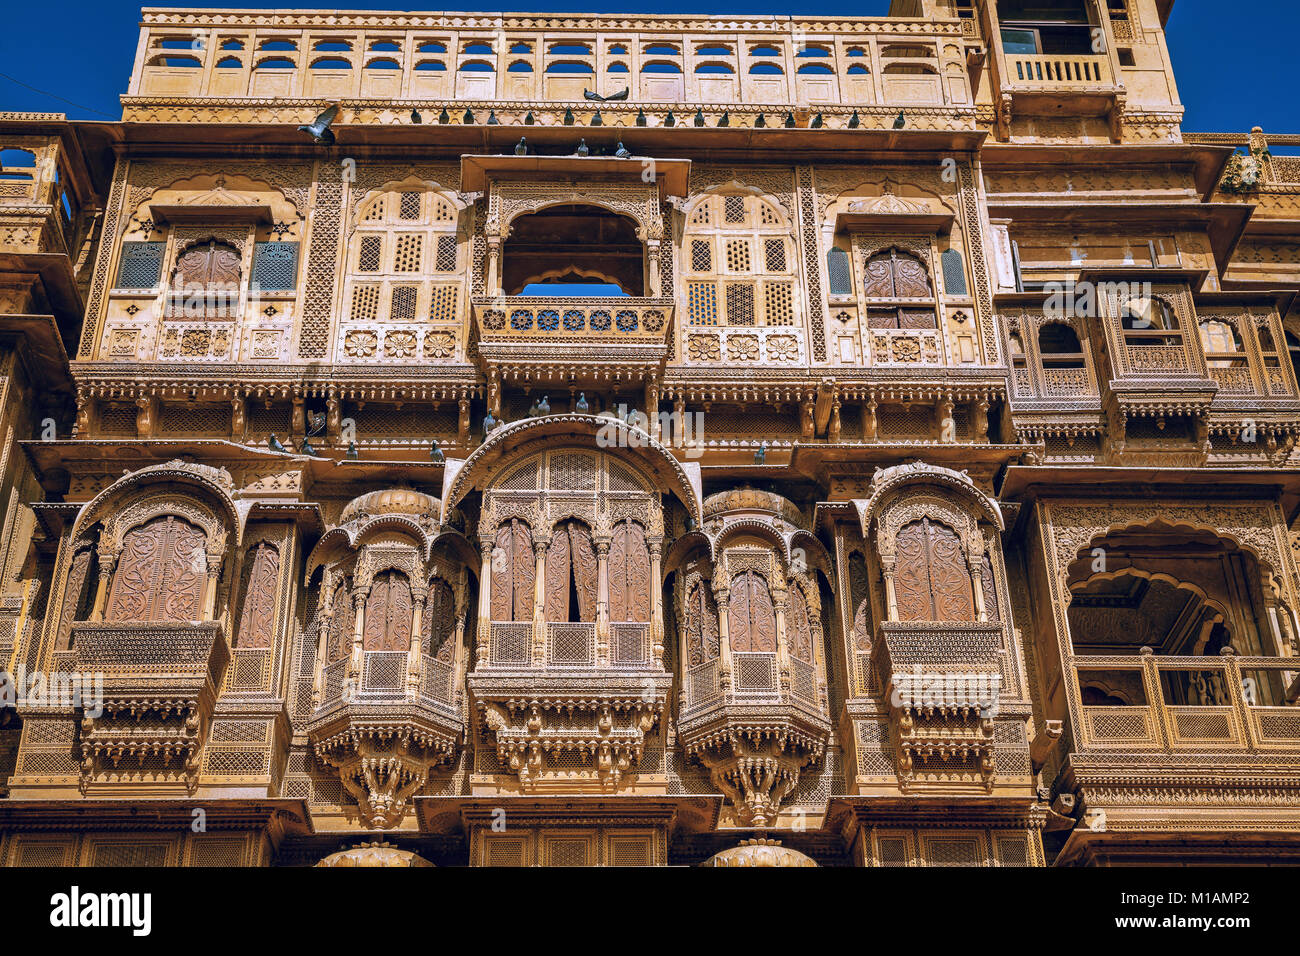 Rajasthan architektur kunst gebäude - Patwon ki Haveli. Eine schön gestaltete königliche Residenzschloss Gebäude in Jaisalmer, Rajasthan. Stockfoto